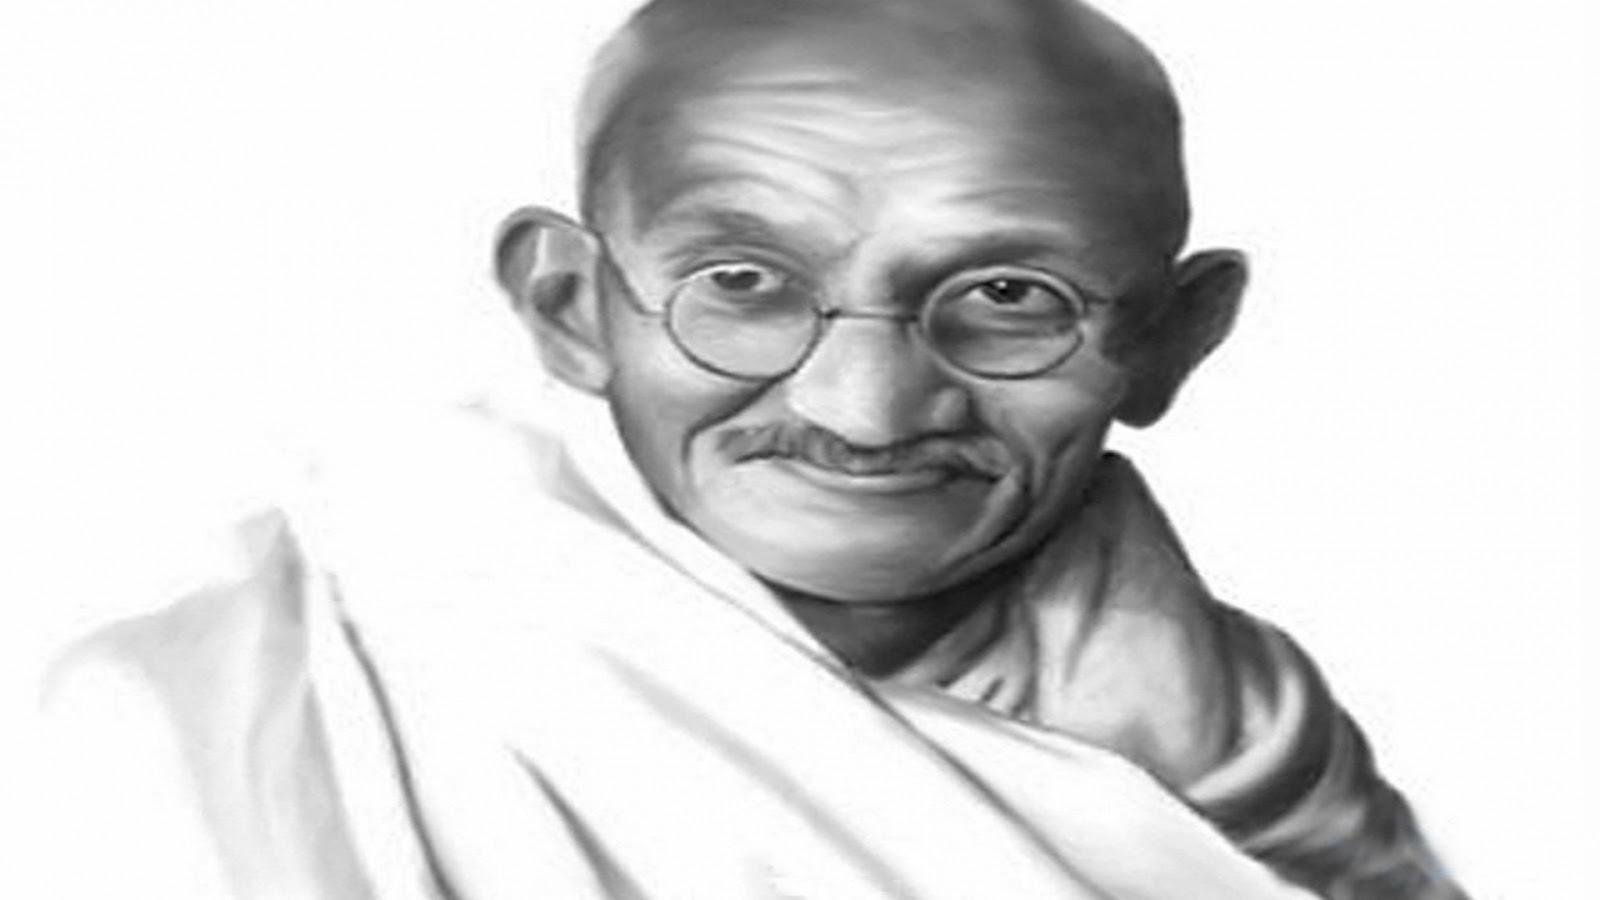 Gandhi pic download free